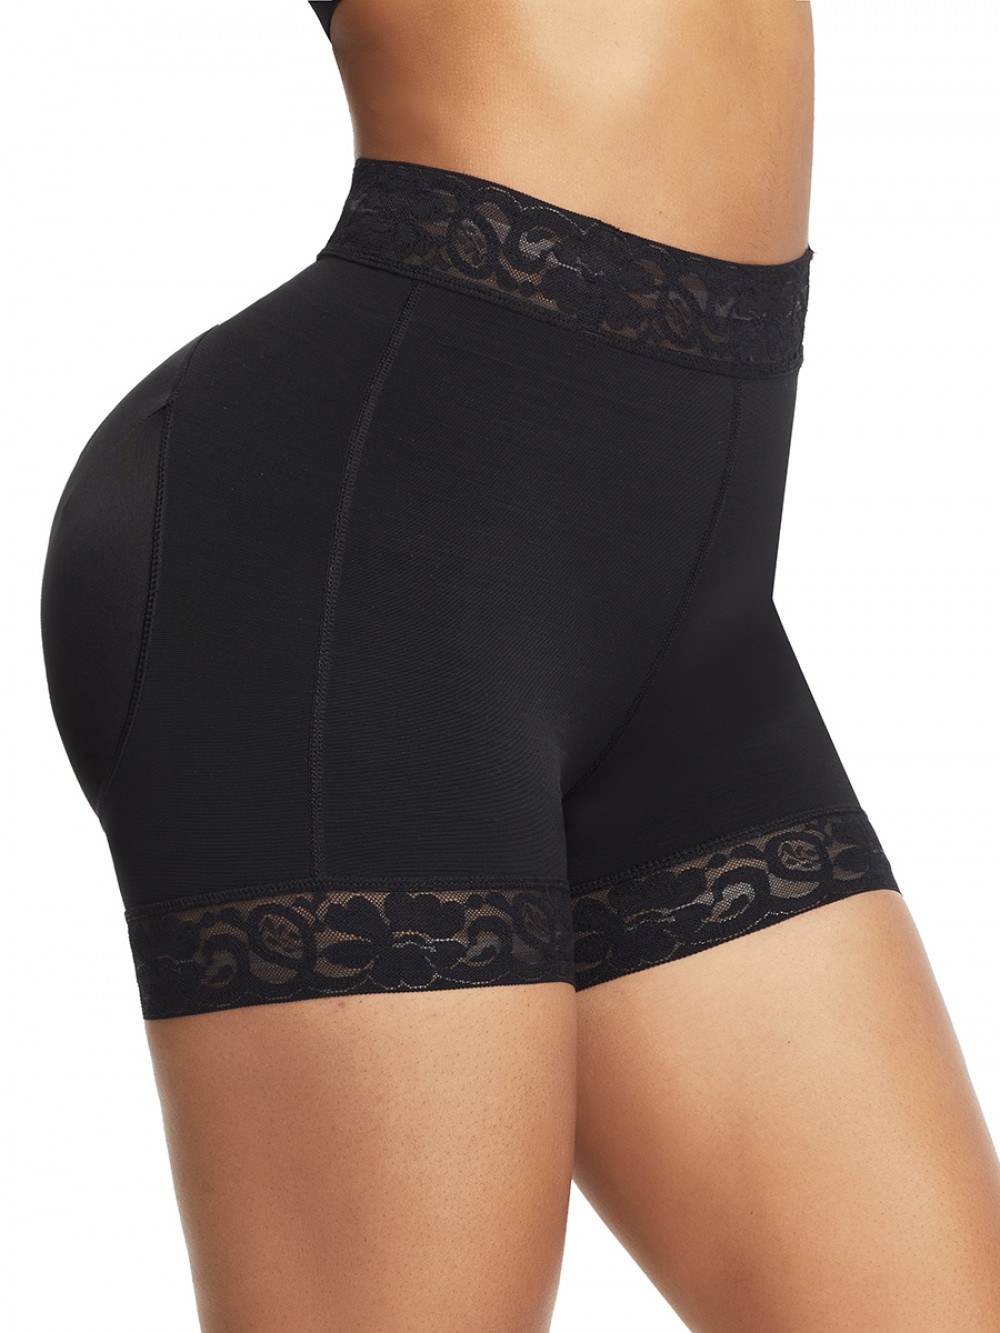 Black High Waist Lace Butt Enhancer Panty Firm Control